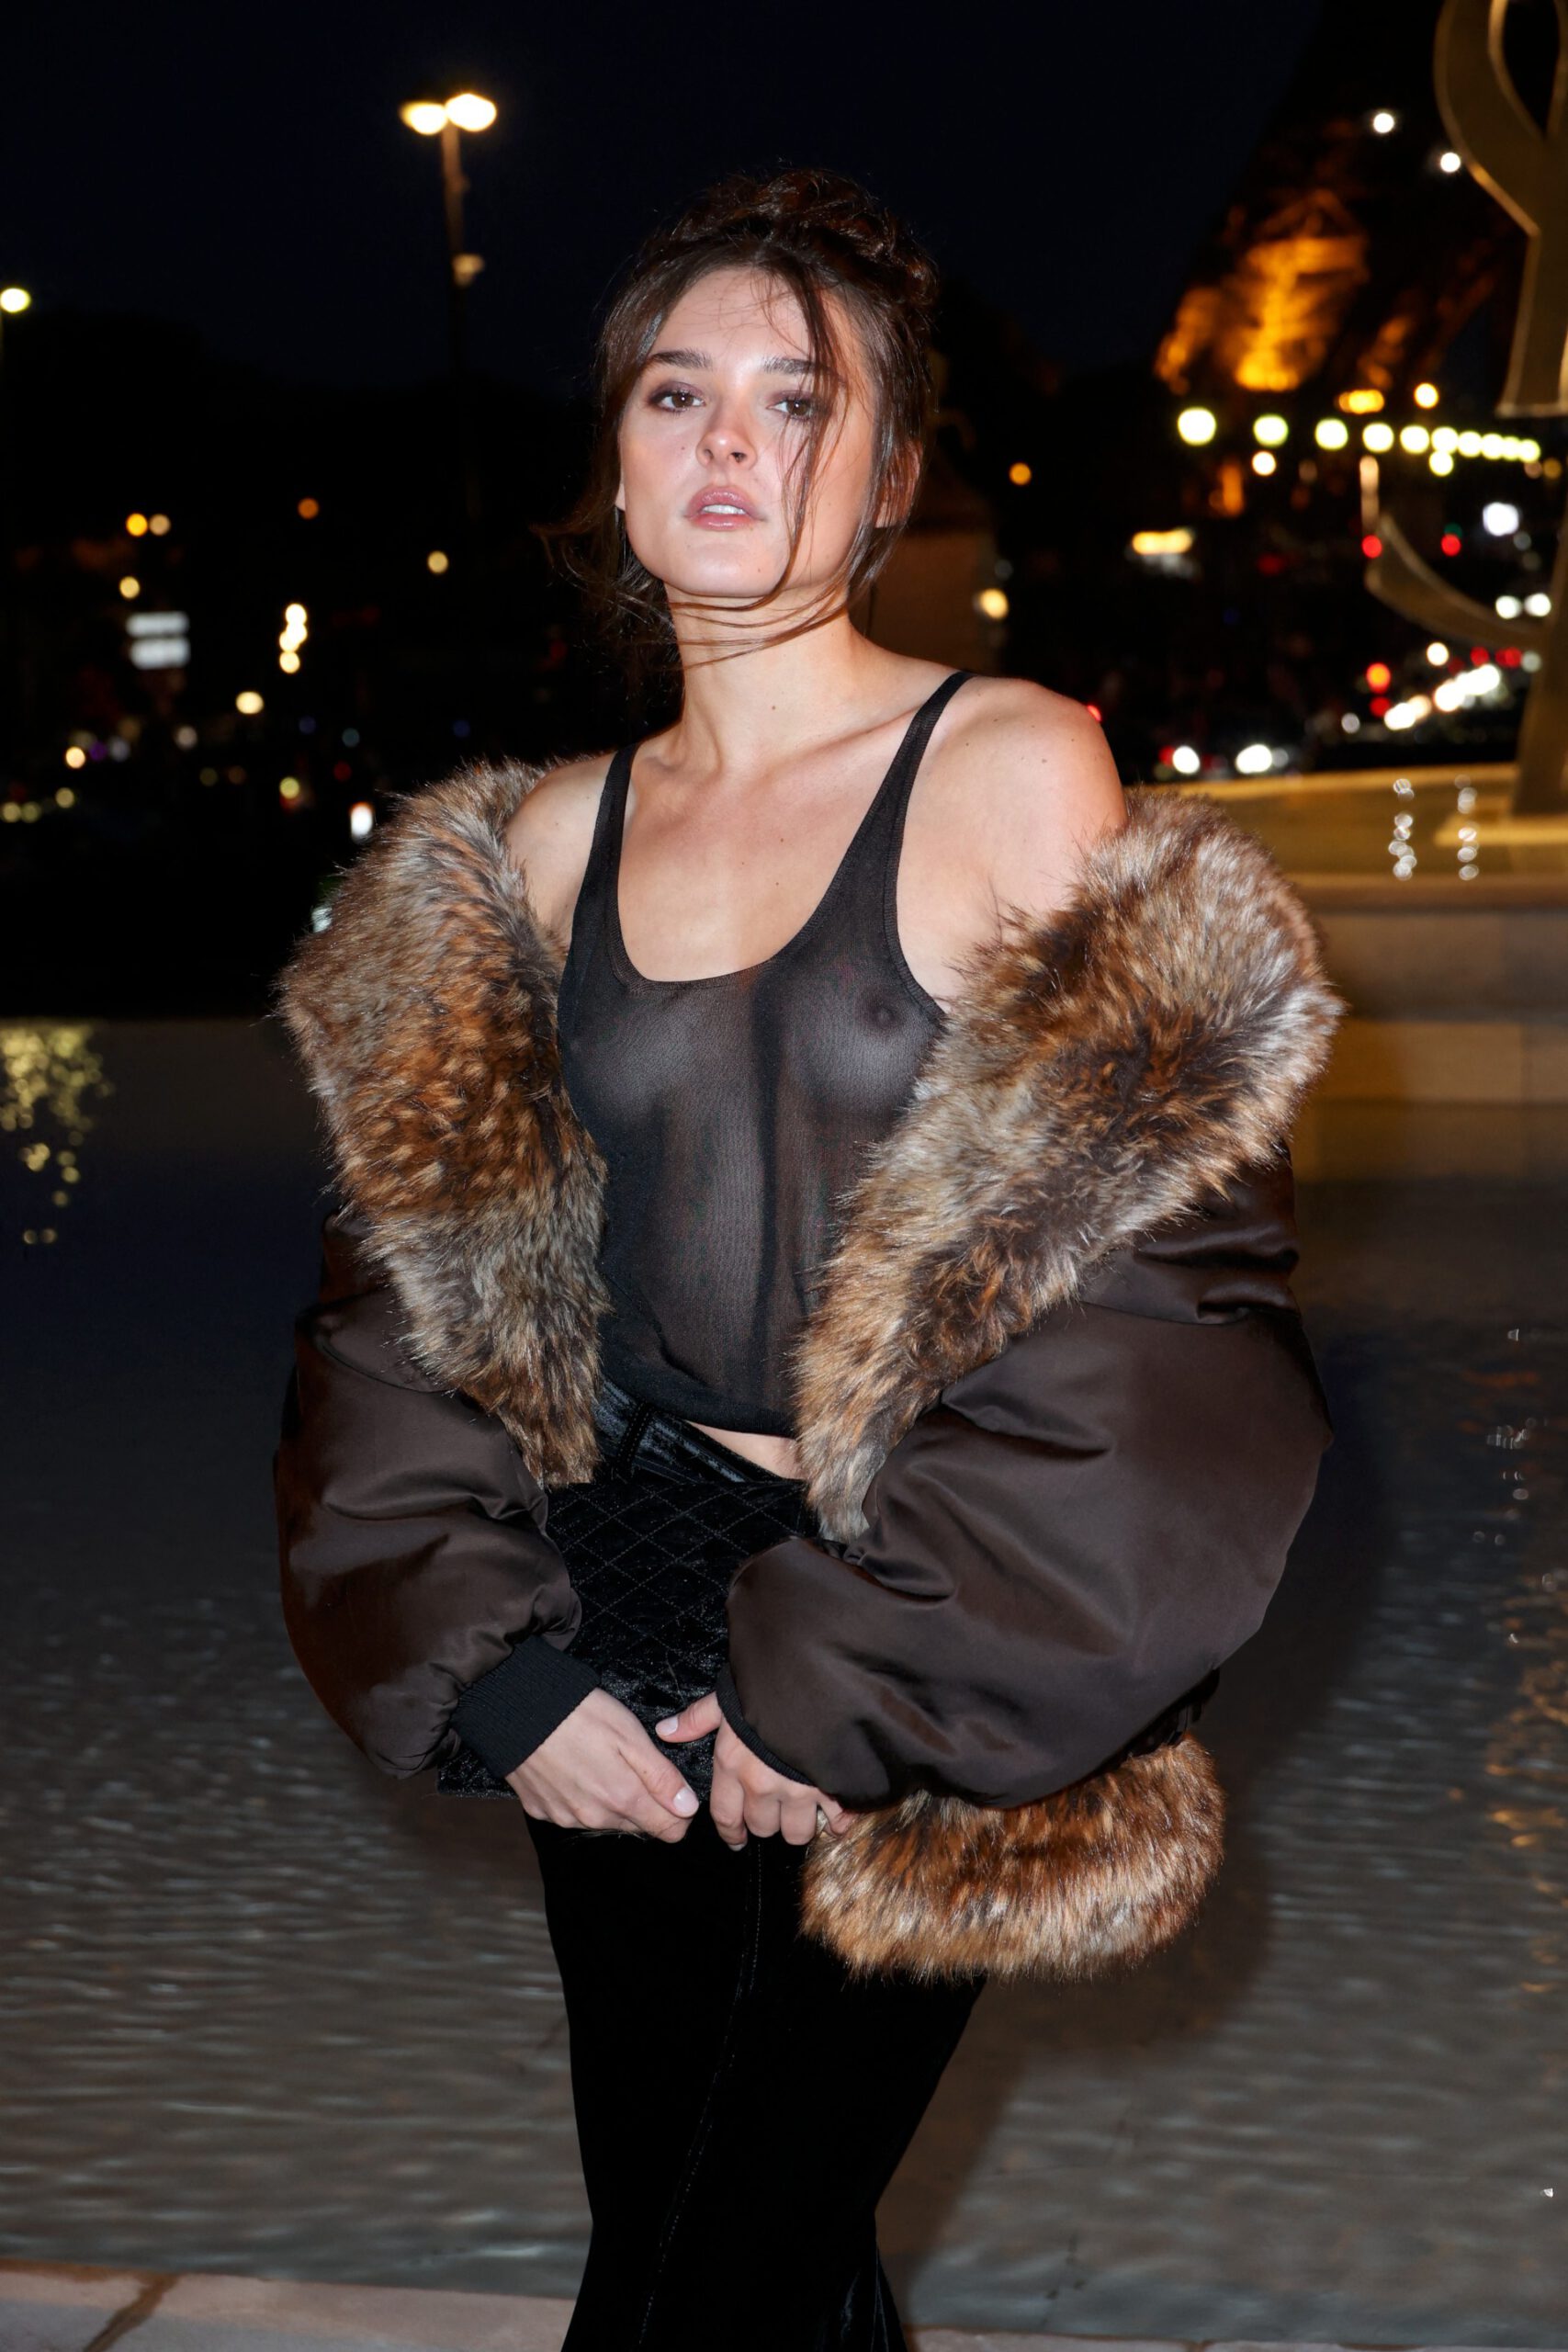 Американская певица Шарлотта Лоуренс появилась на модном показе в прозрачной майке на голое тело и у неё порвалась юбка, обнажив попку